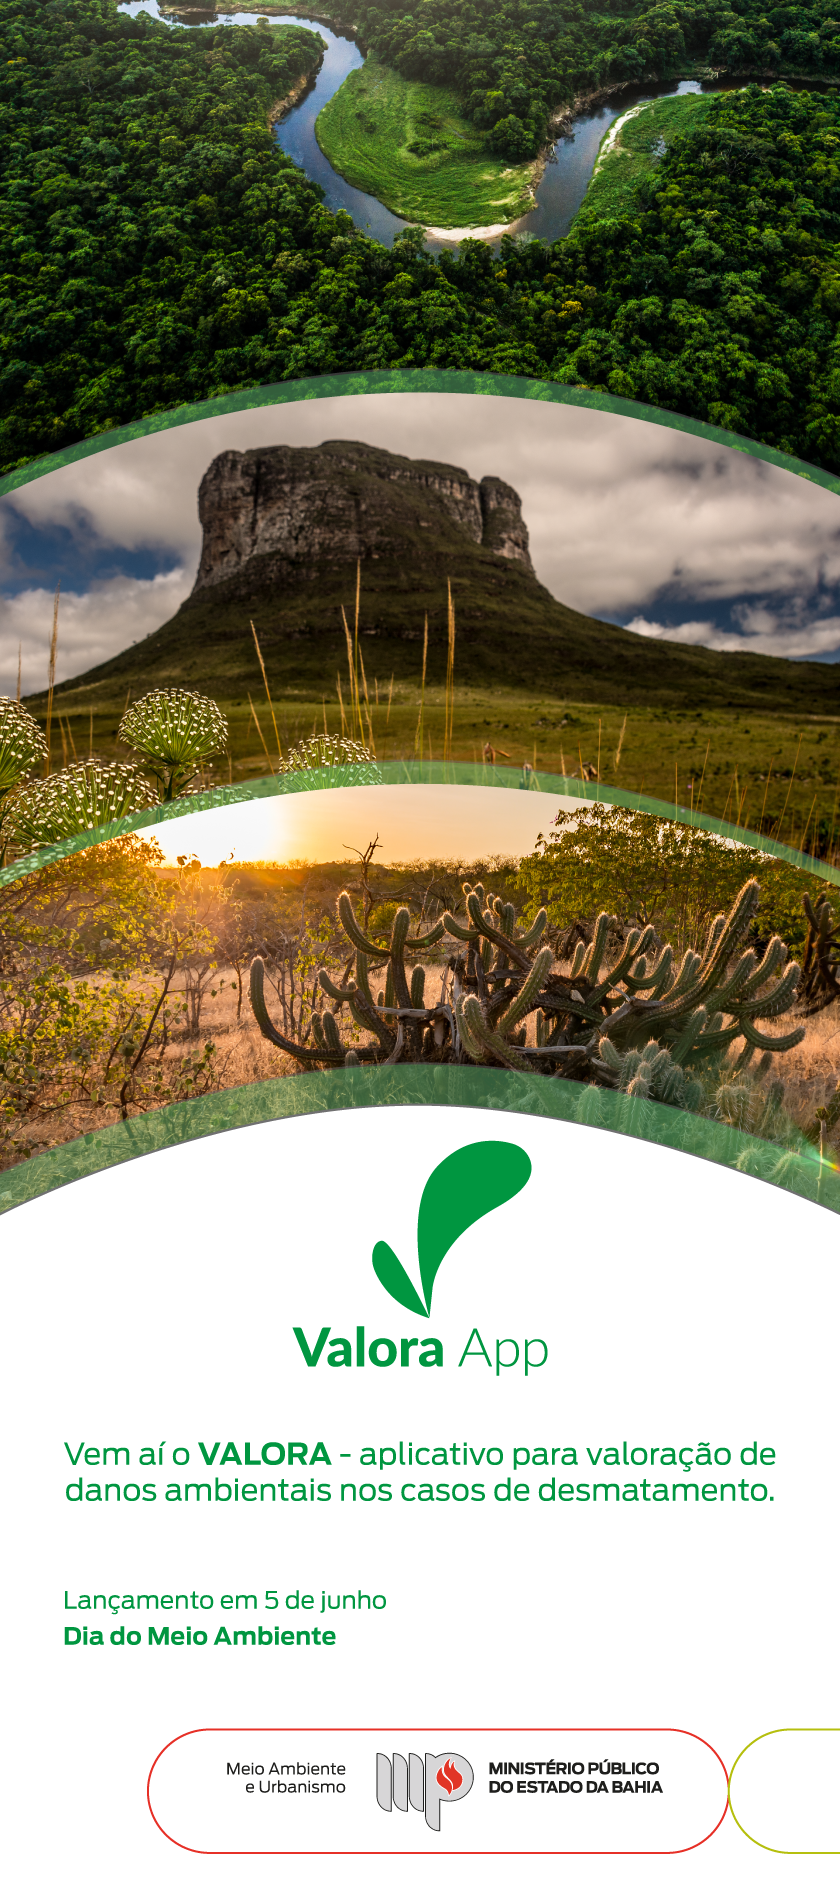 Imagem: Paisagem com vegetações e marca do Valora Texto: Vem aí o VALORA - aplicativo para valoração de danos ambientais nos casos de desmatamento. Lançamento em 5 de junho - Dia do Meio Ambiente Assina Ceama e MPBA